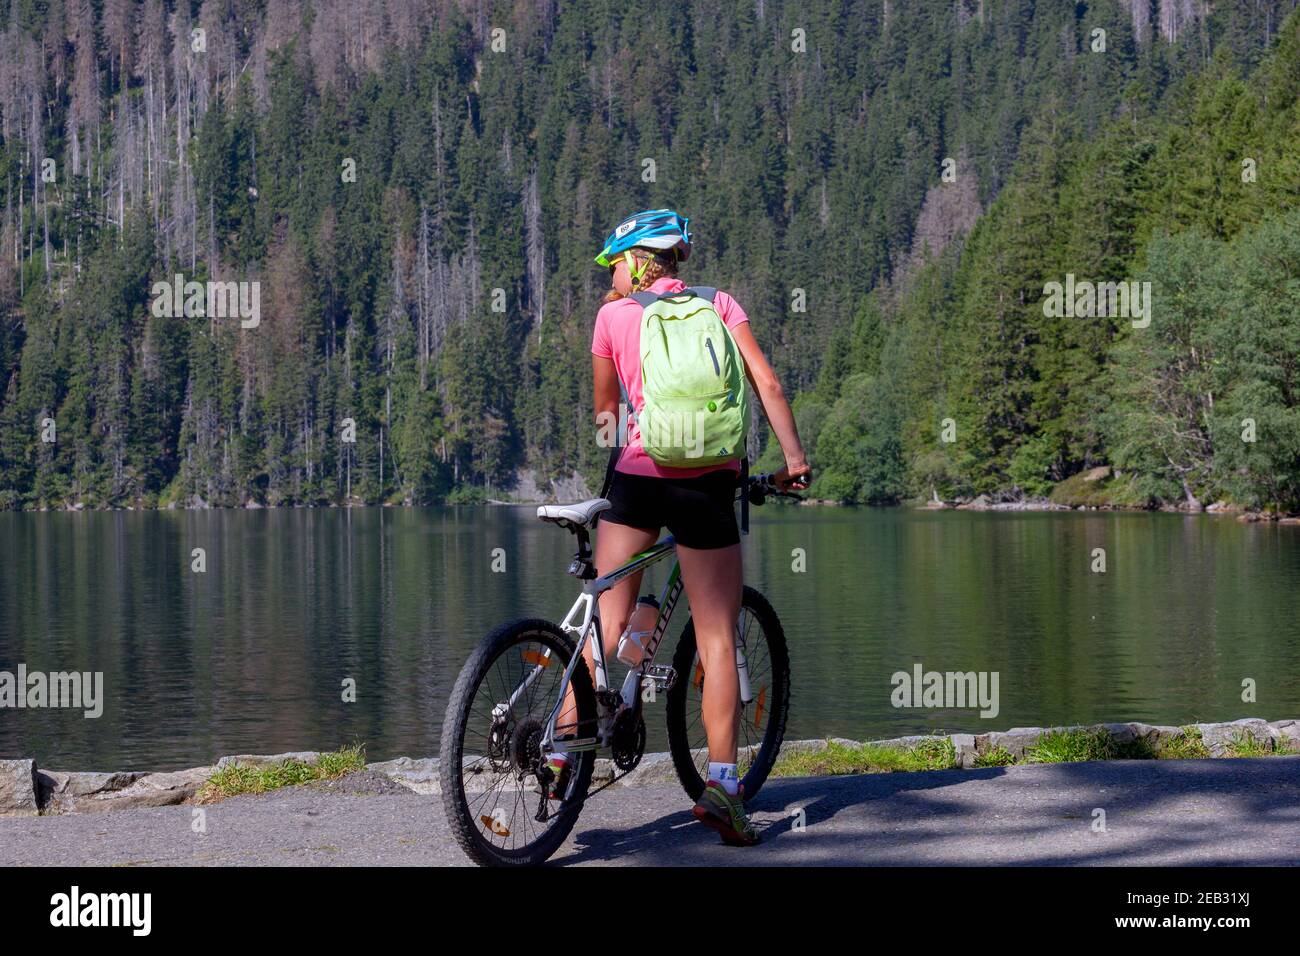 Vélo femme sur un voyage avec sac à dos Sumava National Park République tchèque Lac Noir - cerne Jezero, rivage, vélo Banque D'Images